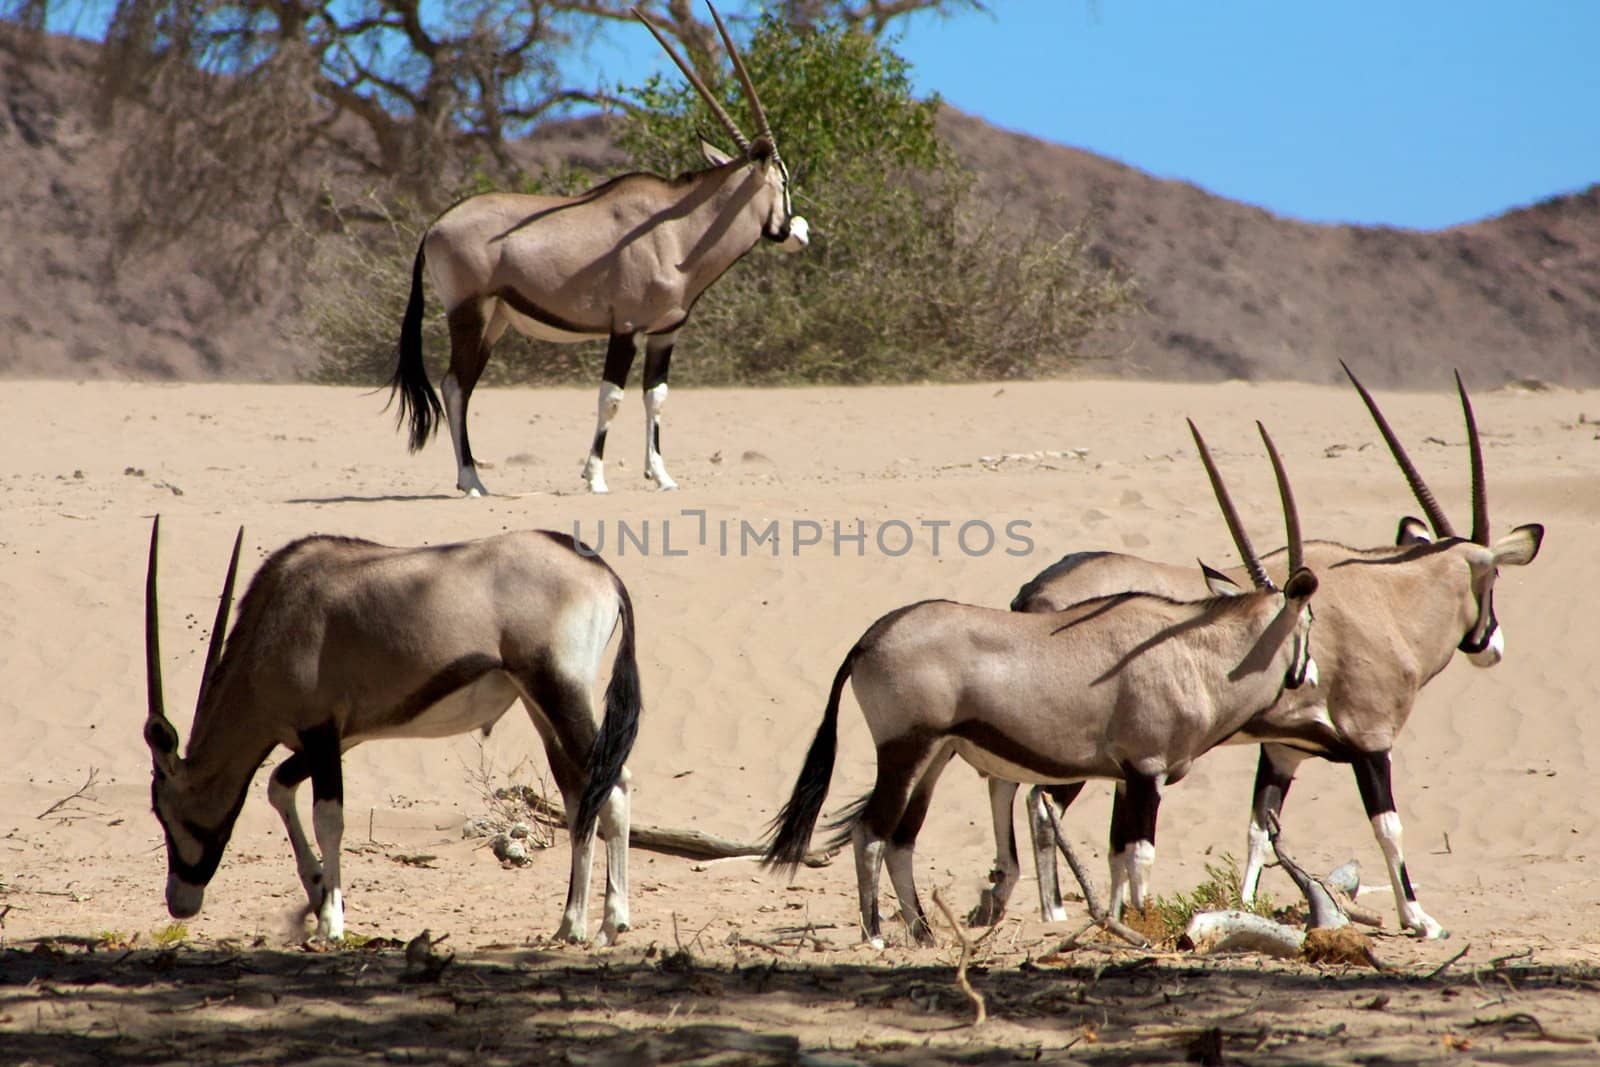 Gemsboks in the Kaokoland in Namibia